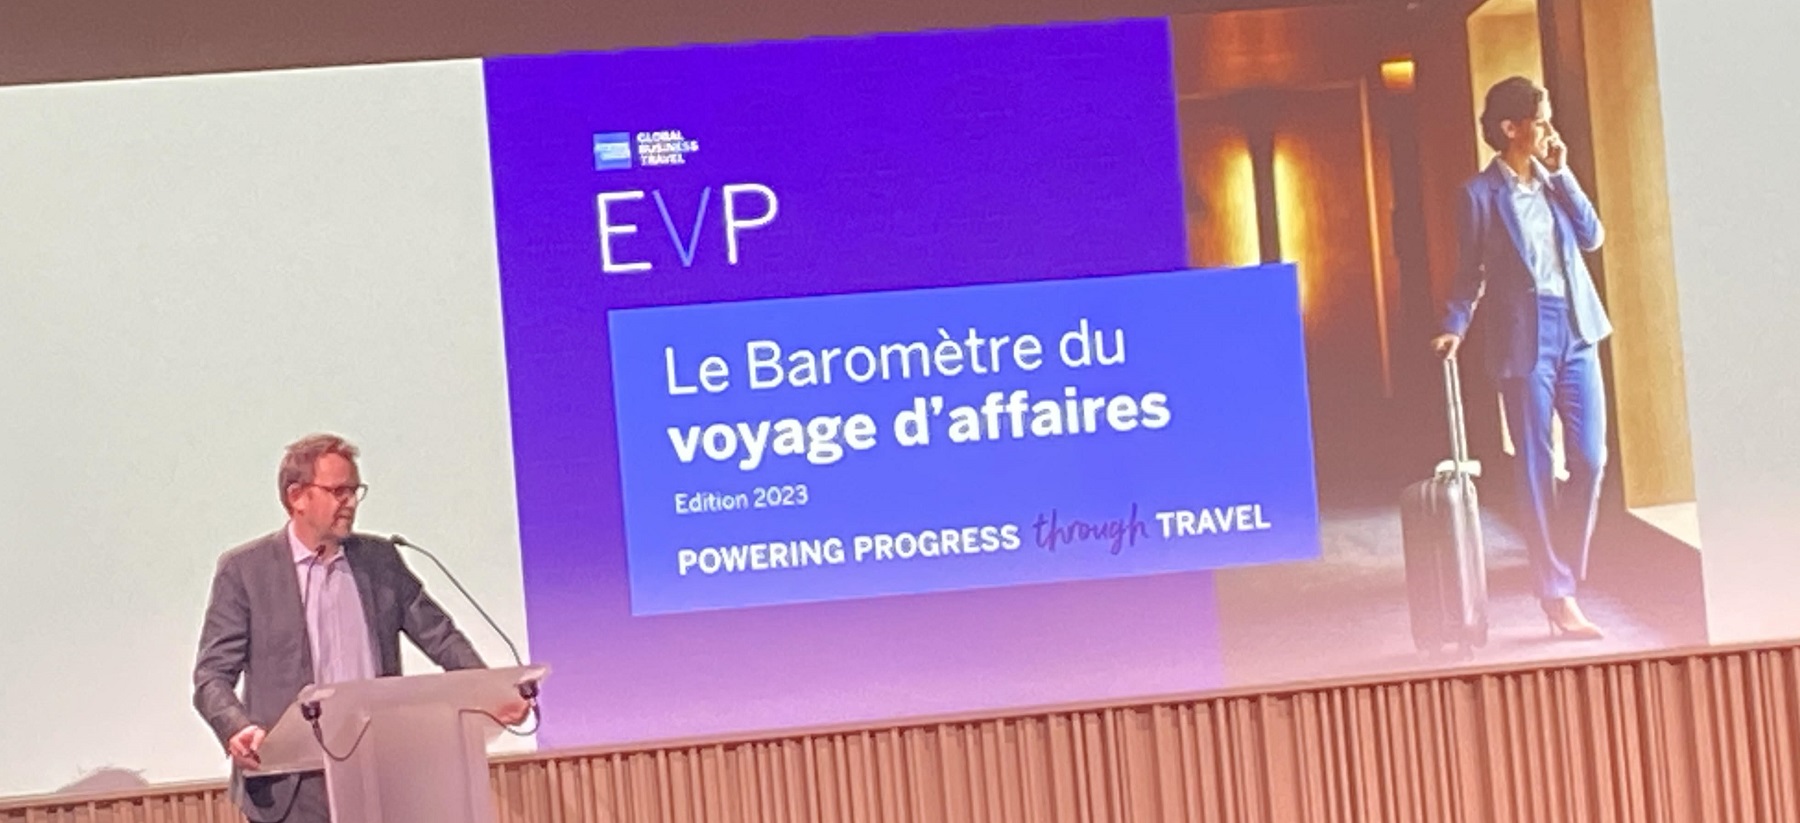 Pour Yorick Charveriat, le patron d'American Express GBT France, même si le voyage d’affaires reste en dessous de l’index du CAC40, les courbes suivent les mêmes tendances, montrant « l’importance du voyage d’affaires pour le développement économique du pays ».